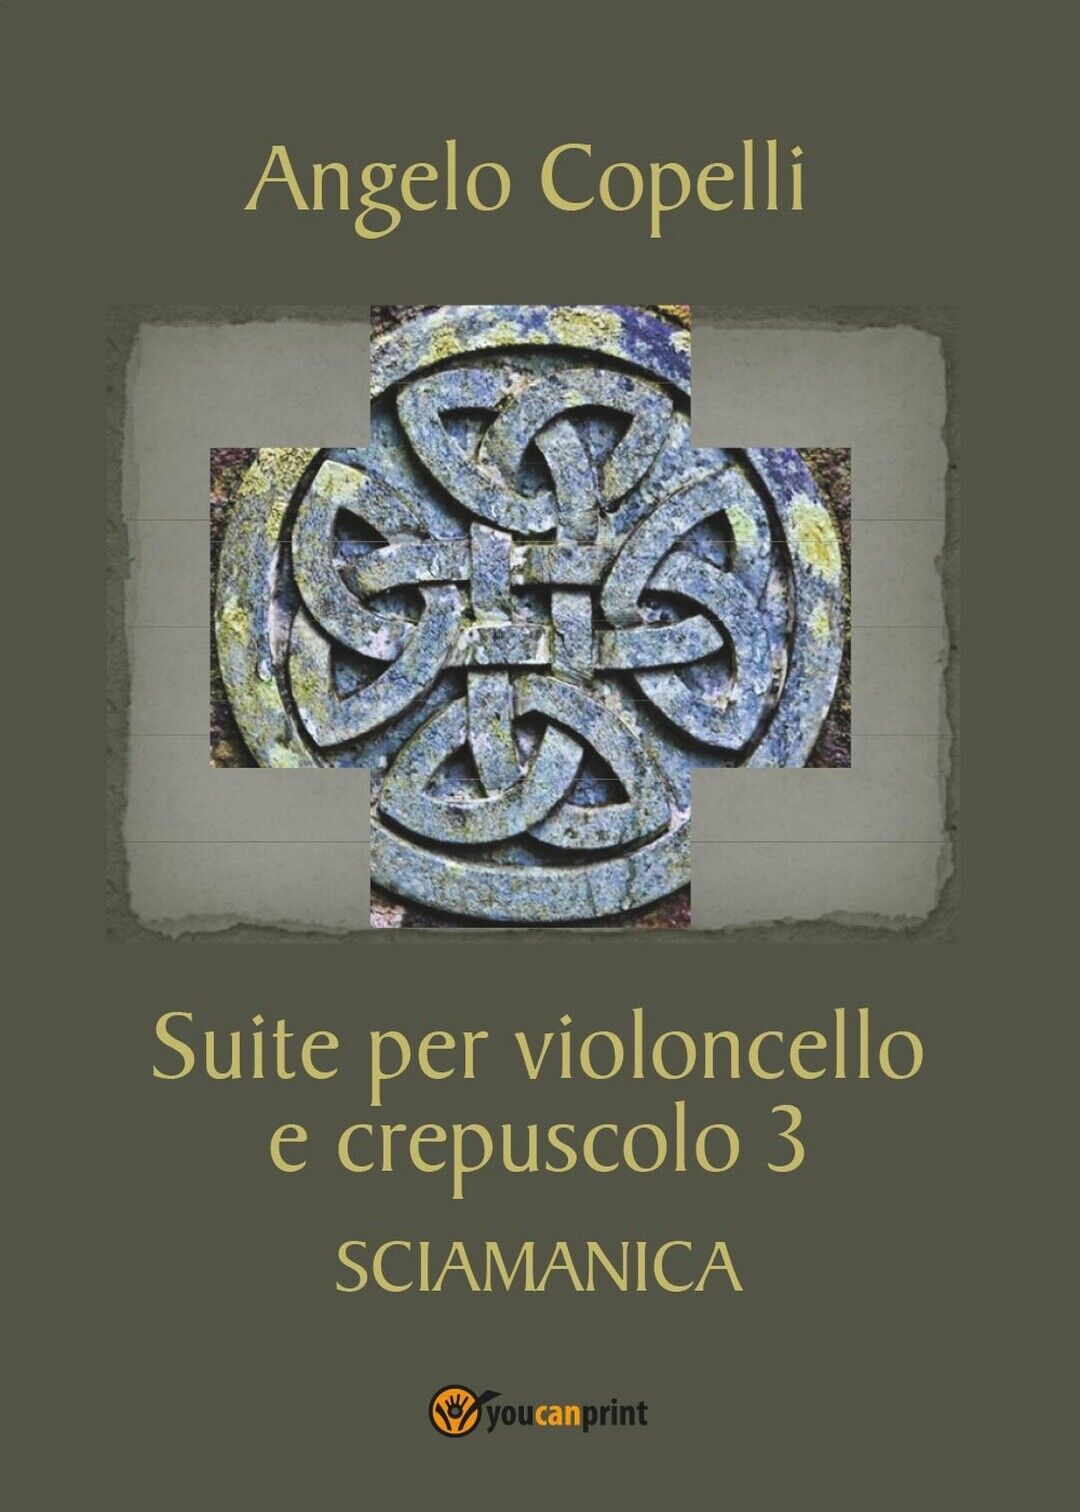 Suite per violoncello e crepuscolo 3 SCIAMANICA, Ngelo Copelli,  2017,  Youcanp. libro usato